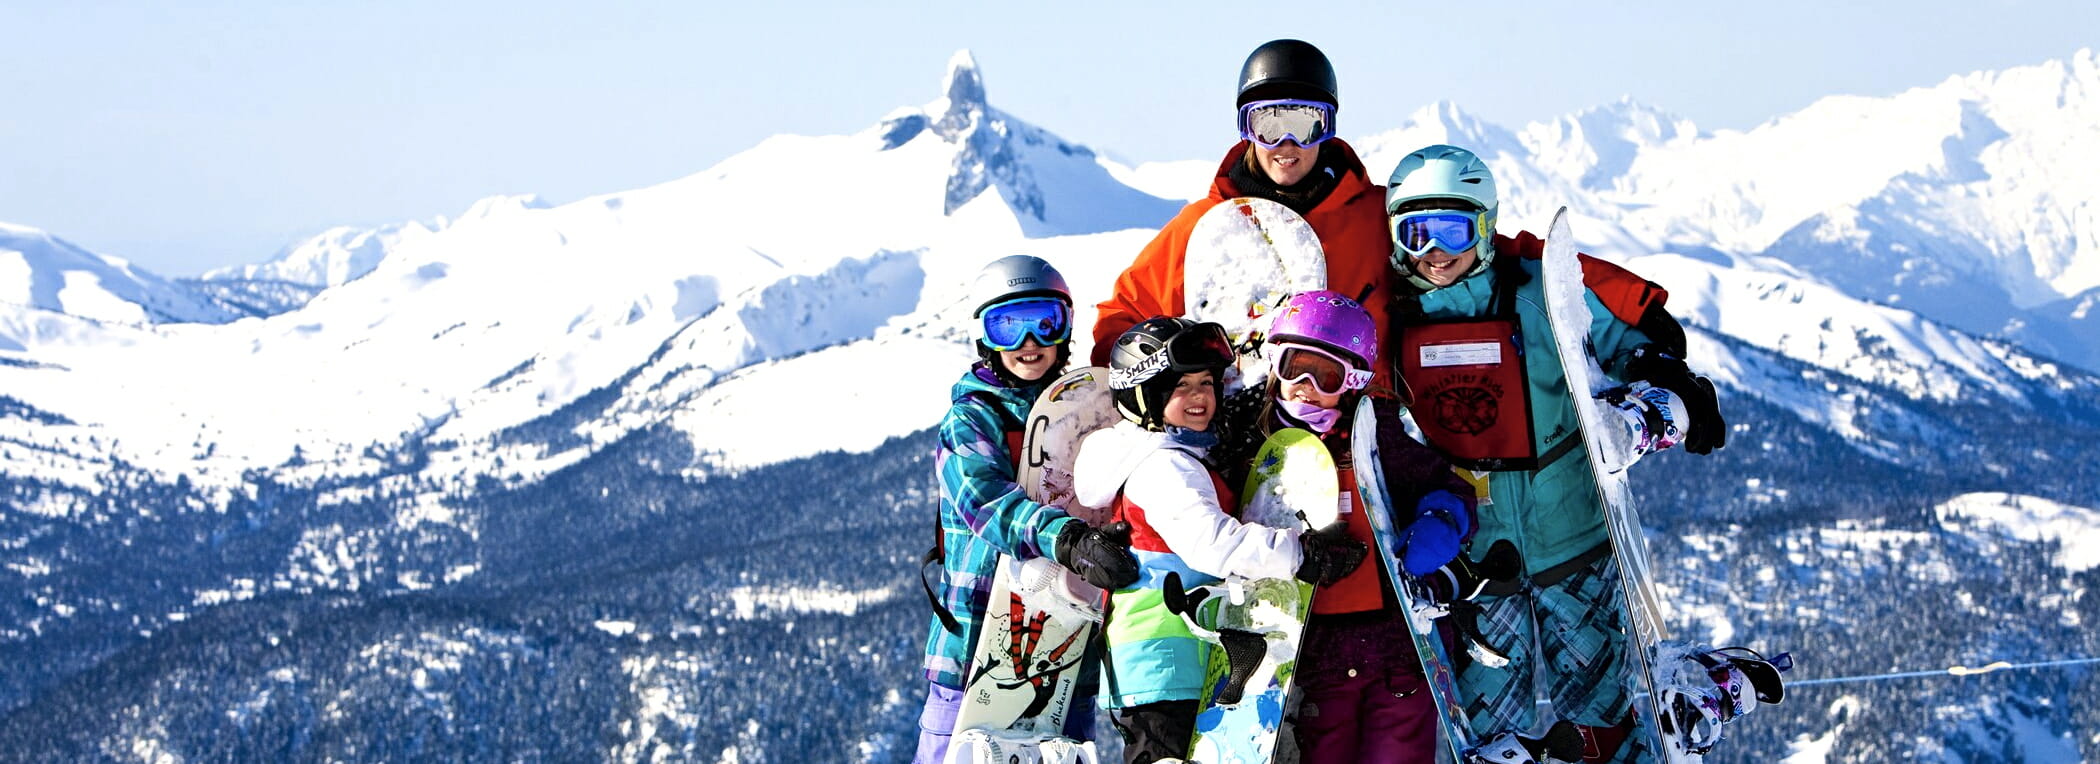 AmyMcDermid family ski